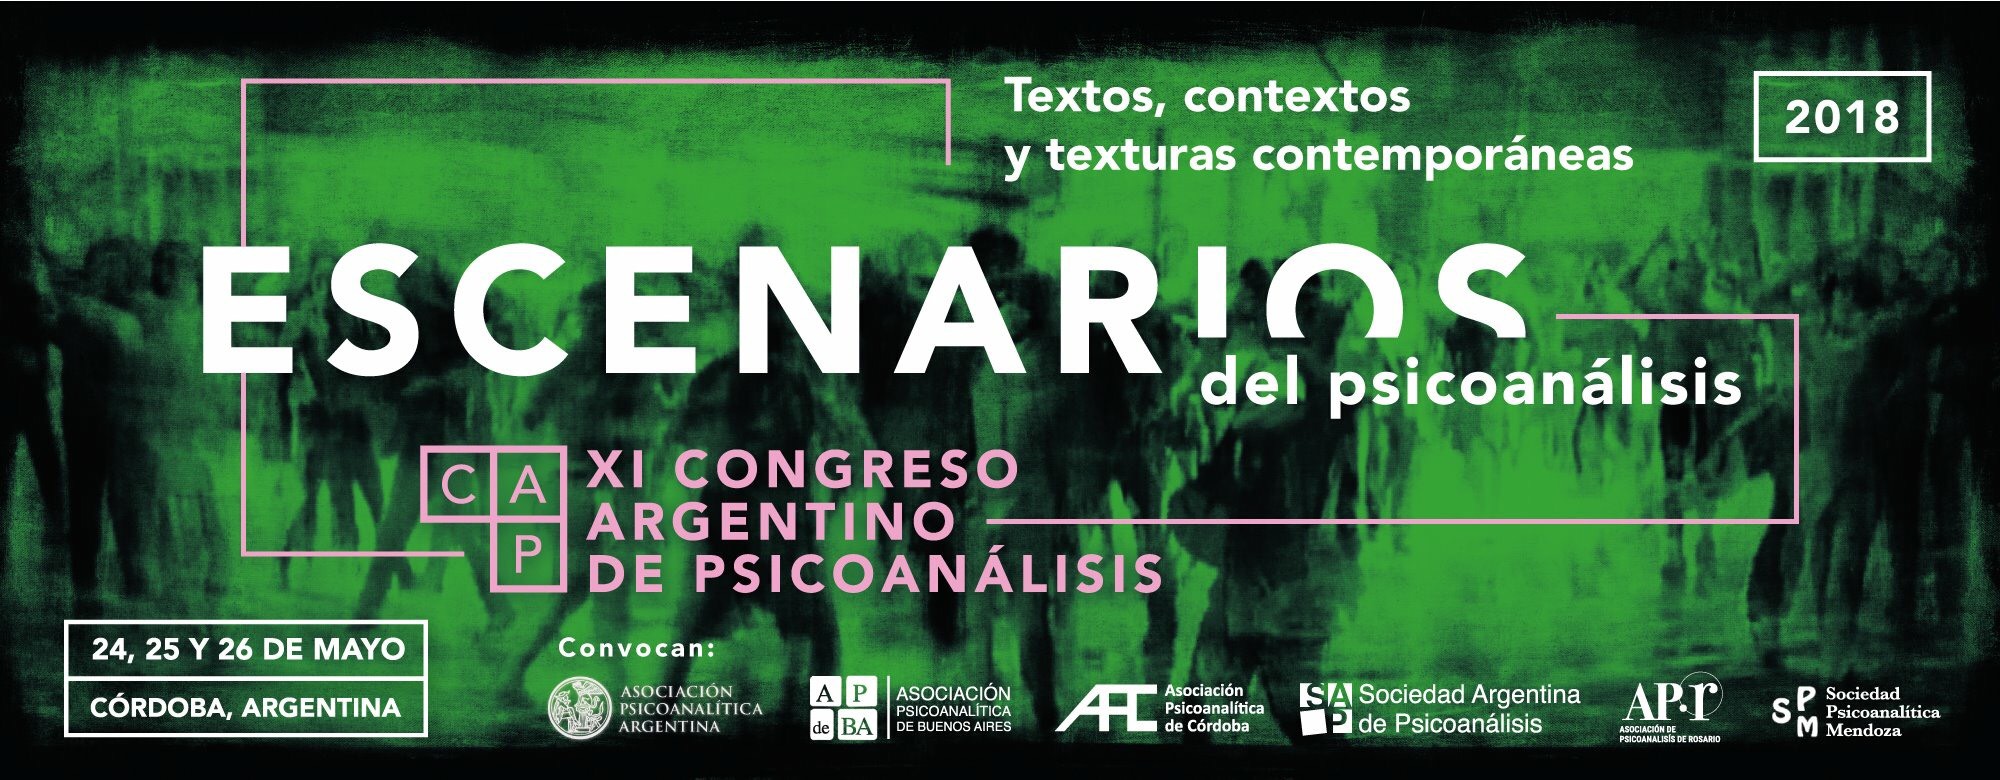 XI Congreso Argentino de Psicoanálisis